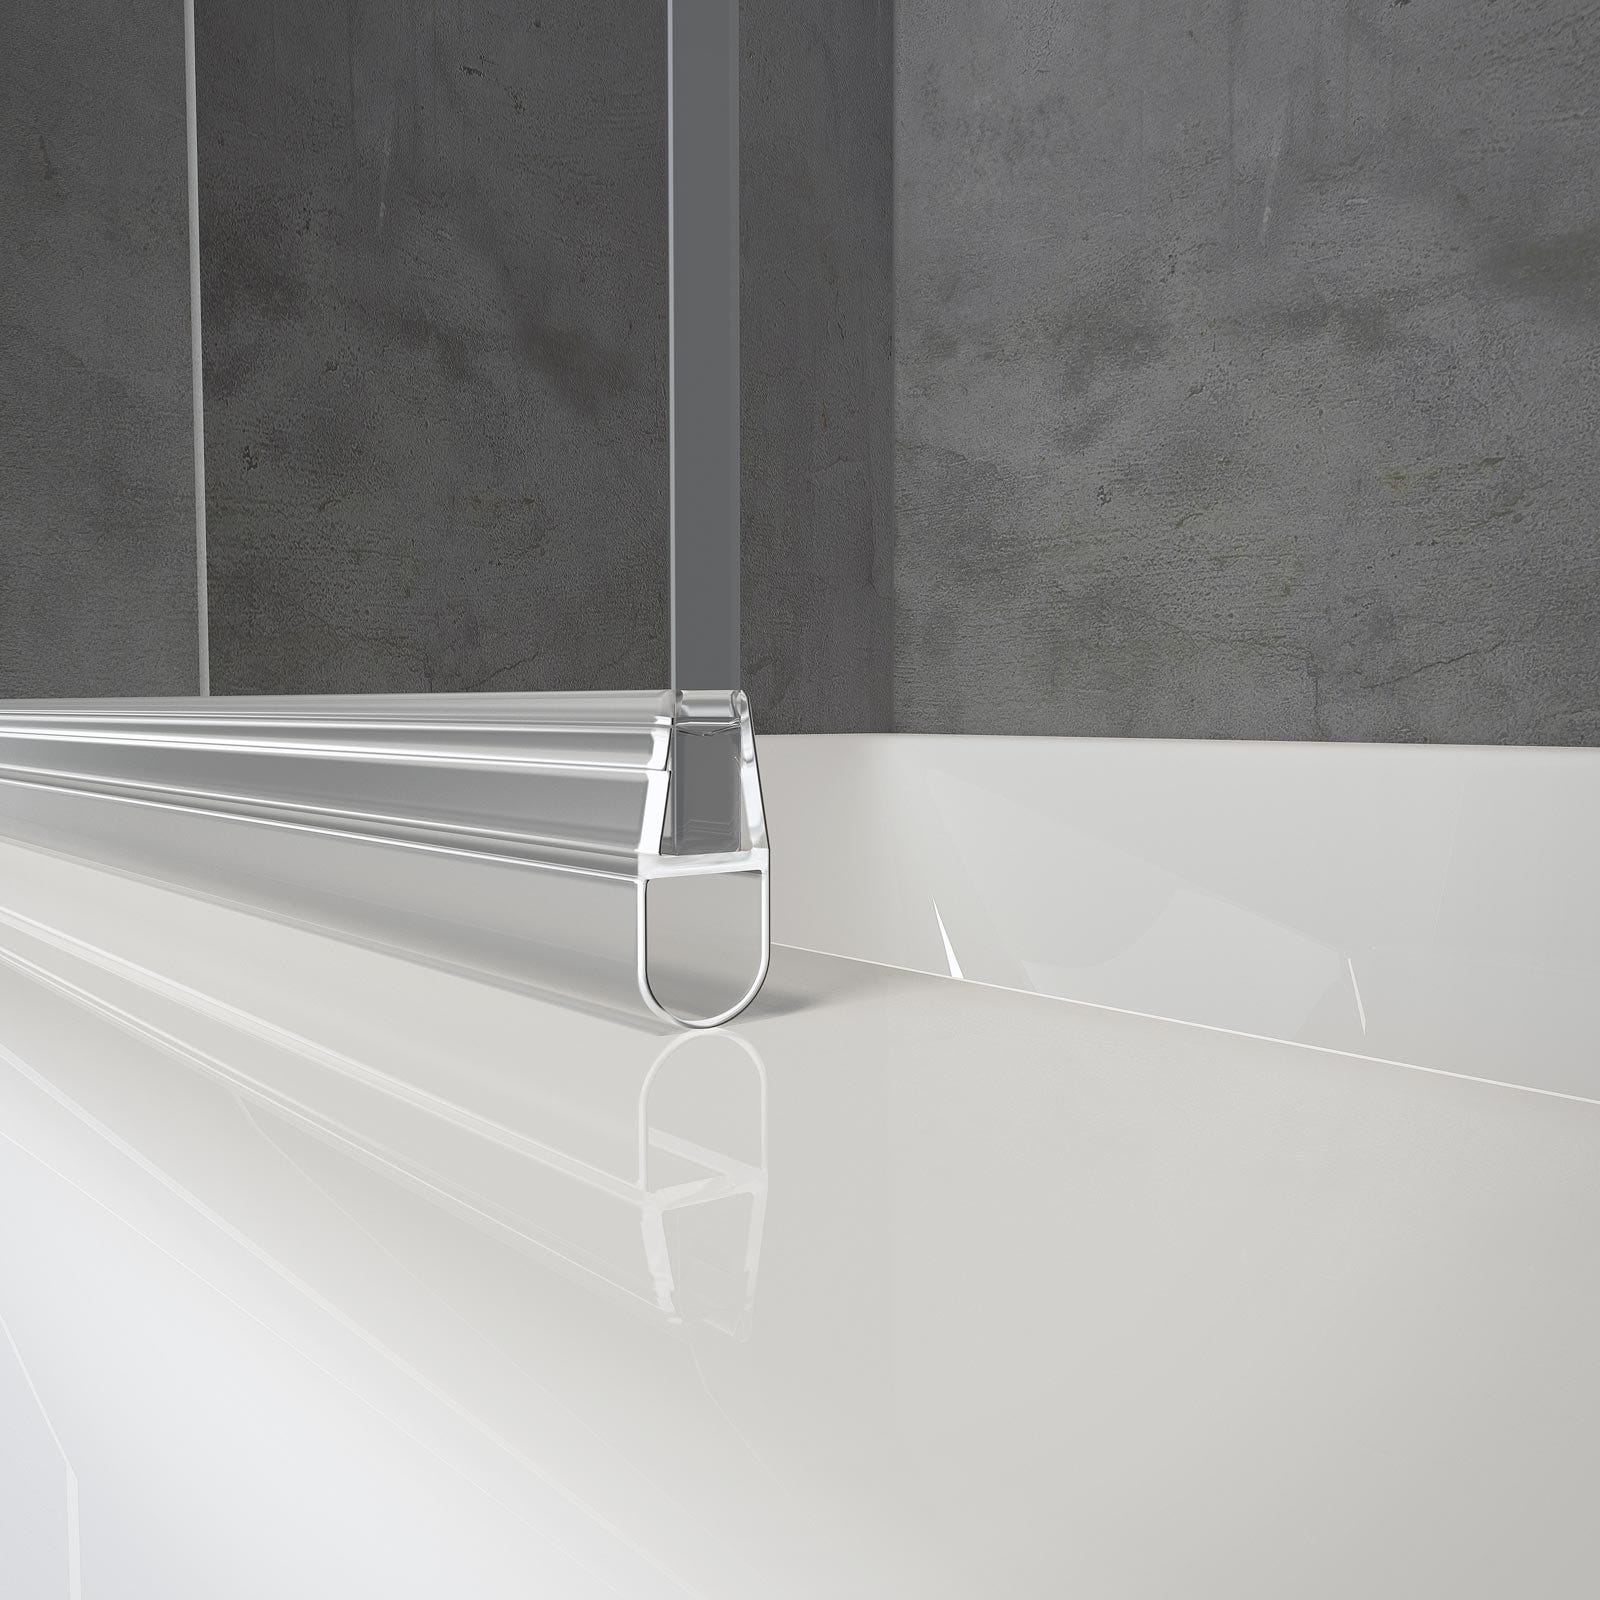 Schulte pare-baignoire rabattable, 50 x 130 cm, verre transparent 5 mm, écran paroi de baignoire mobile 1 volet pivotant, profilé alu nature 2